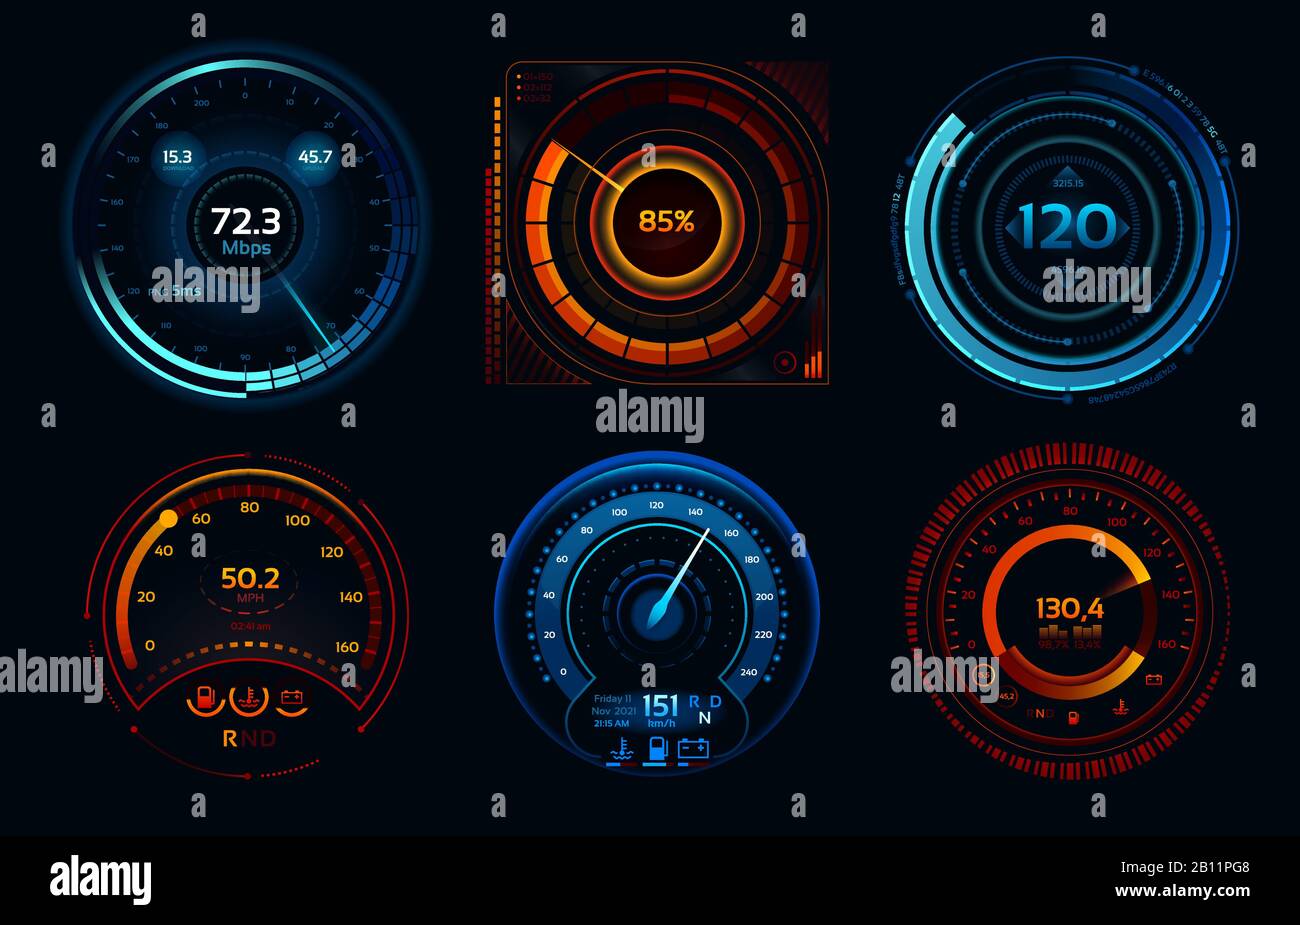 Indicatori del tachimetro. Misuratori di potenza, connessione internet veloce o lenta fasi del misuratore di velocità concetto vettoriale Illustrazione Vettoriale